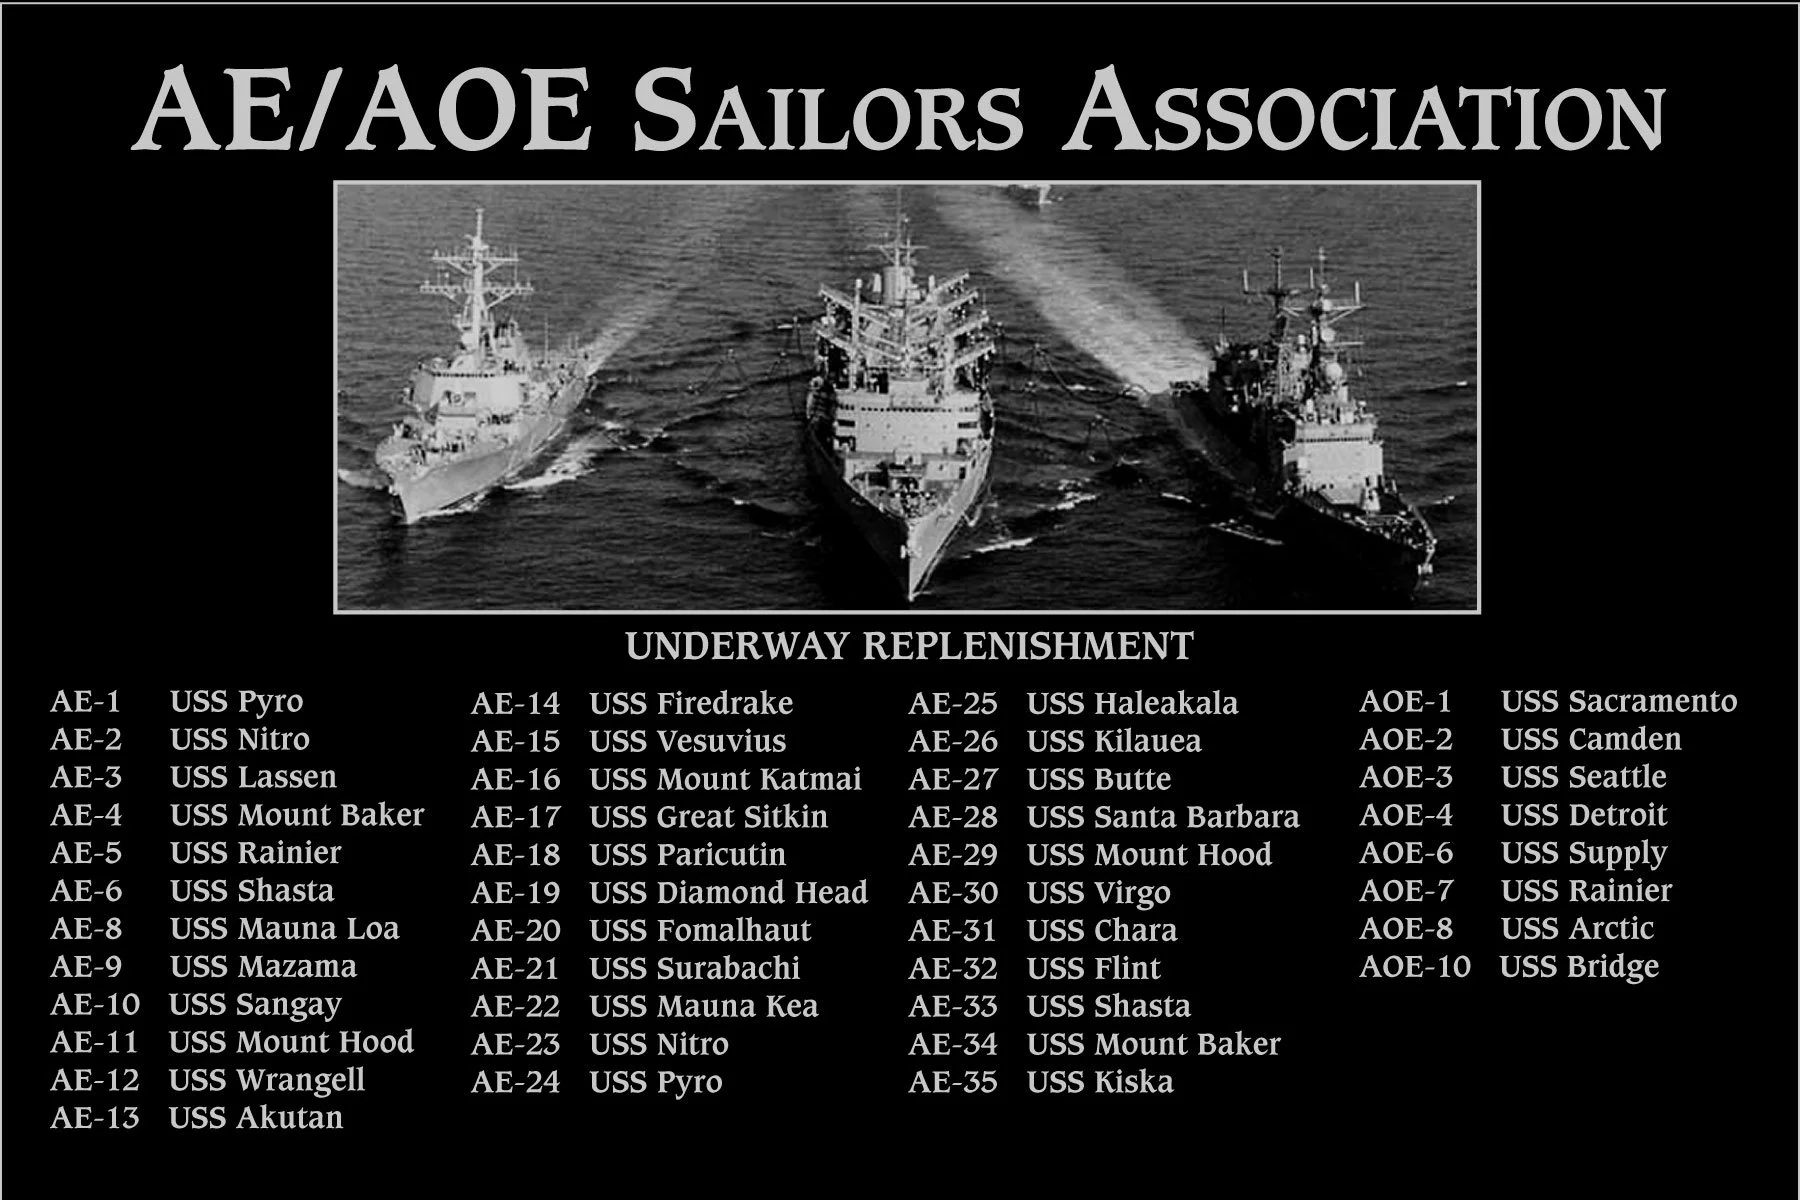 AE/AOE Sailors Association